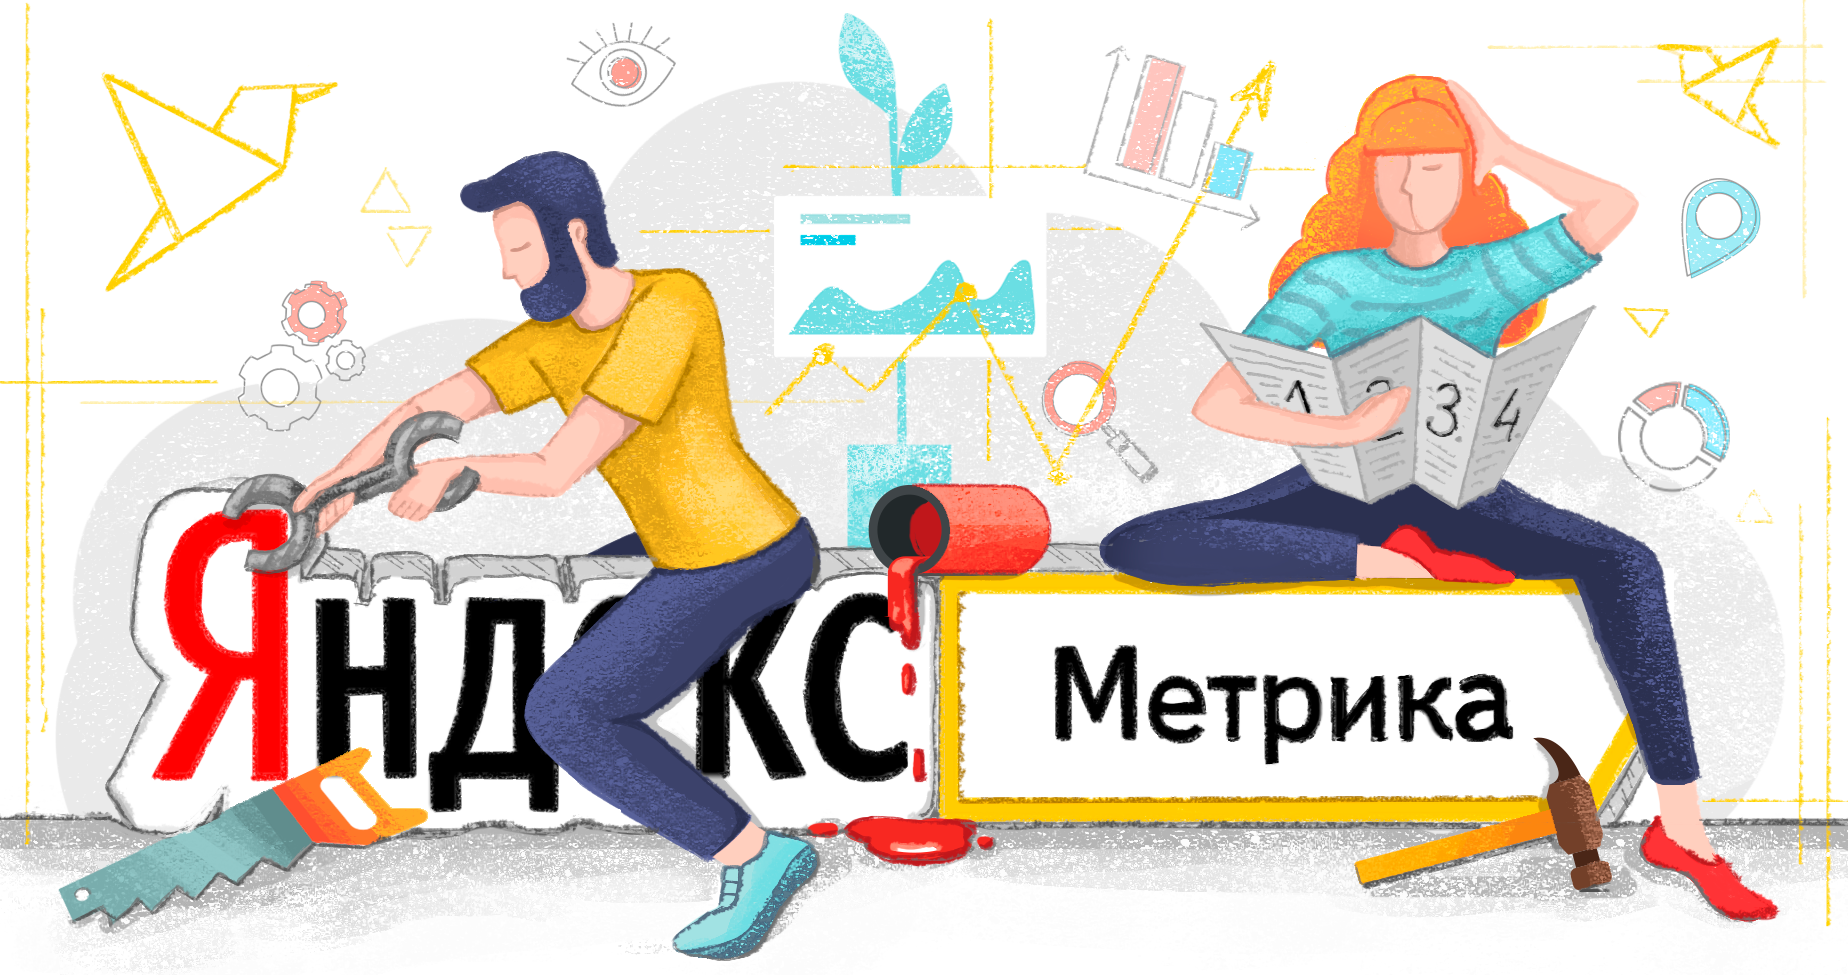 Яндекс.Метрика – что за зверь и как его приручить. Пошаговая инструкция по установке